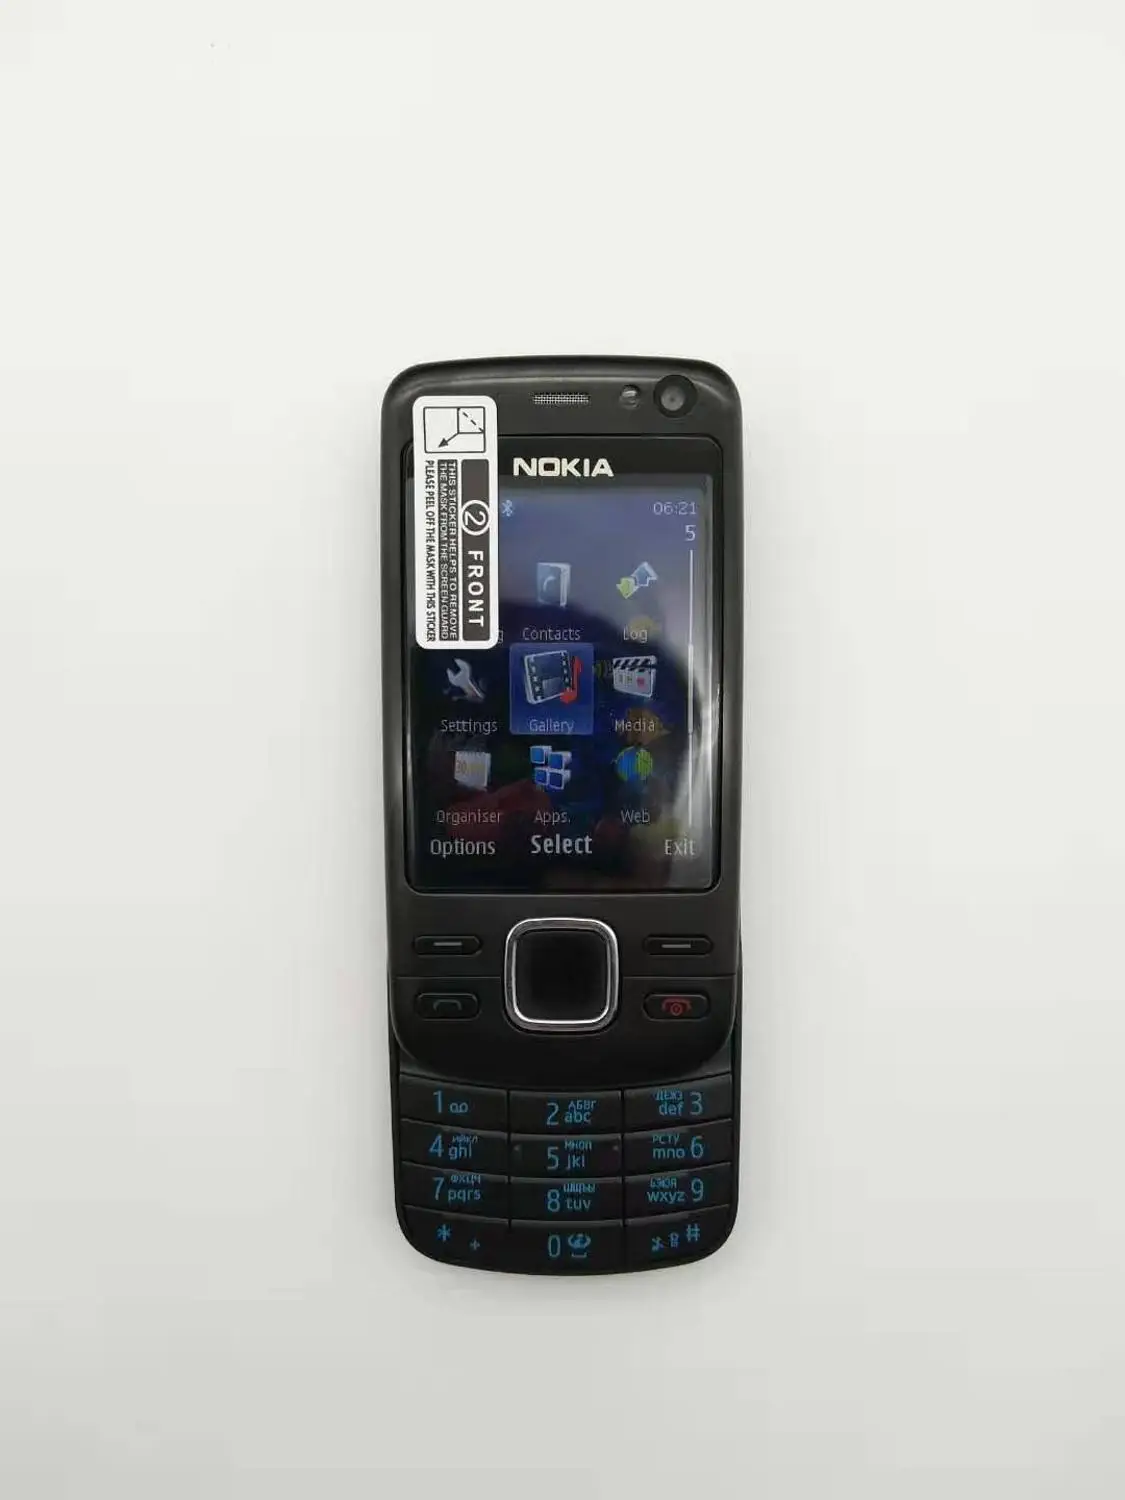 6600i телефон Nokia 6600I сотовый телефон черный цвет отремонтированный